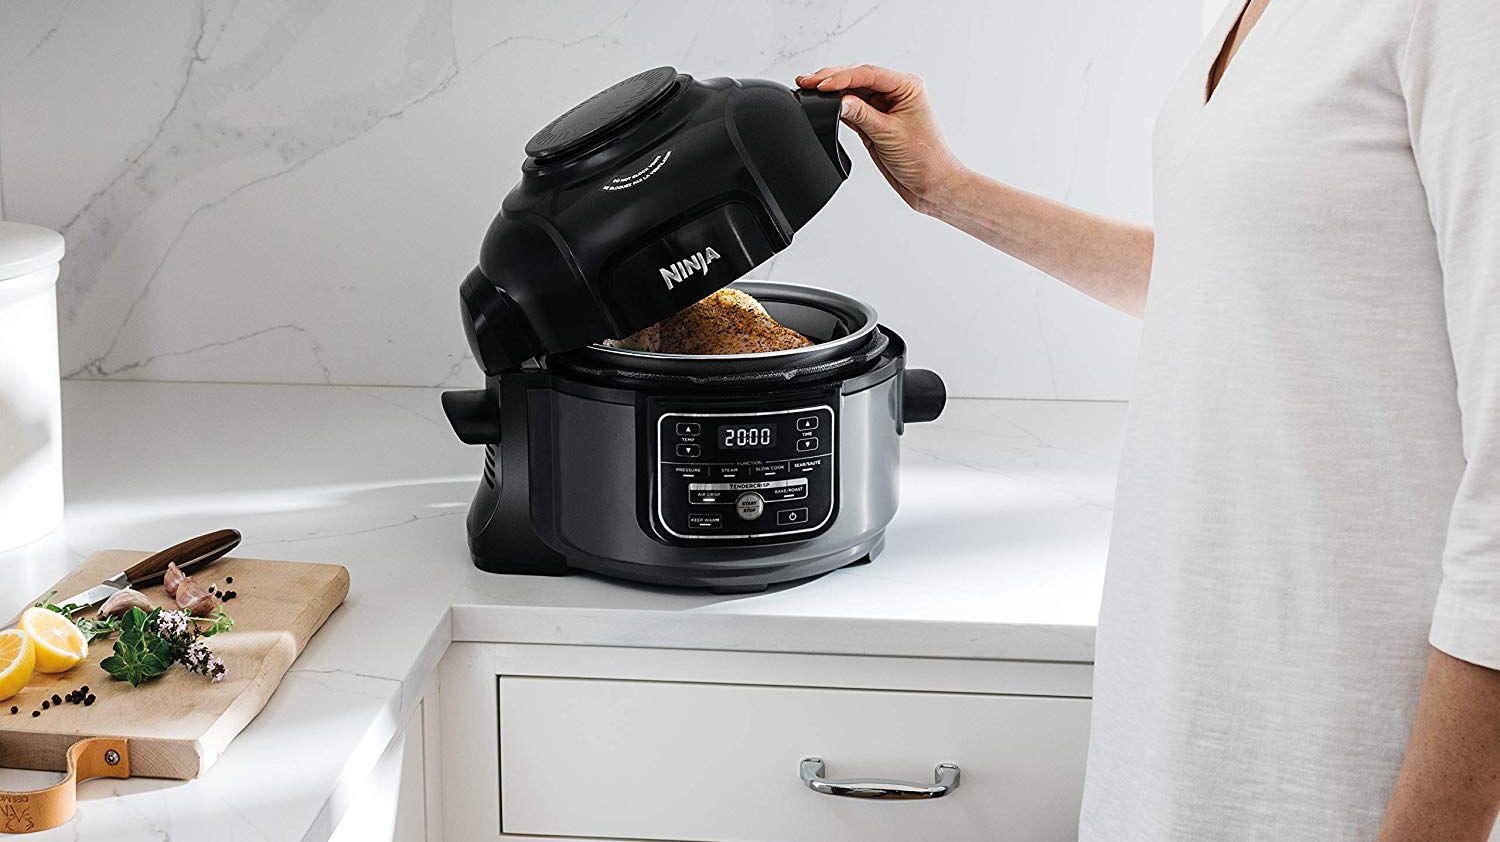 Ninja Foodi sale: Save on the multi-cooker at